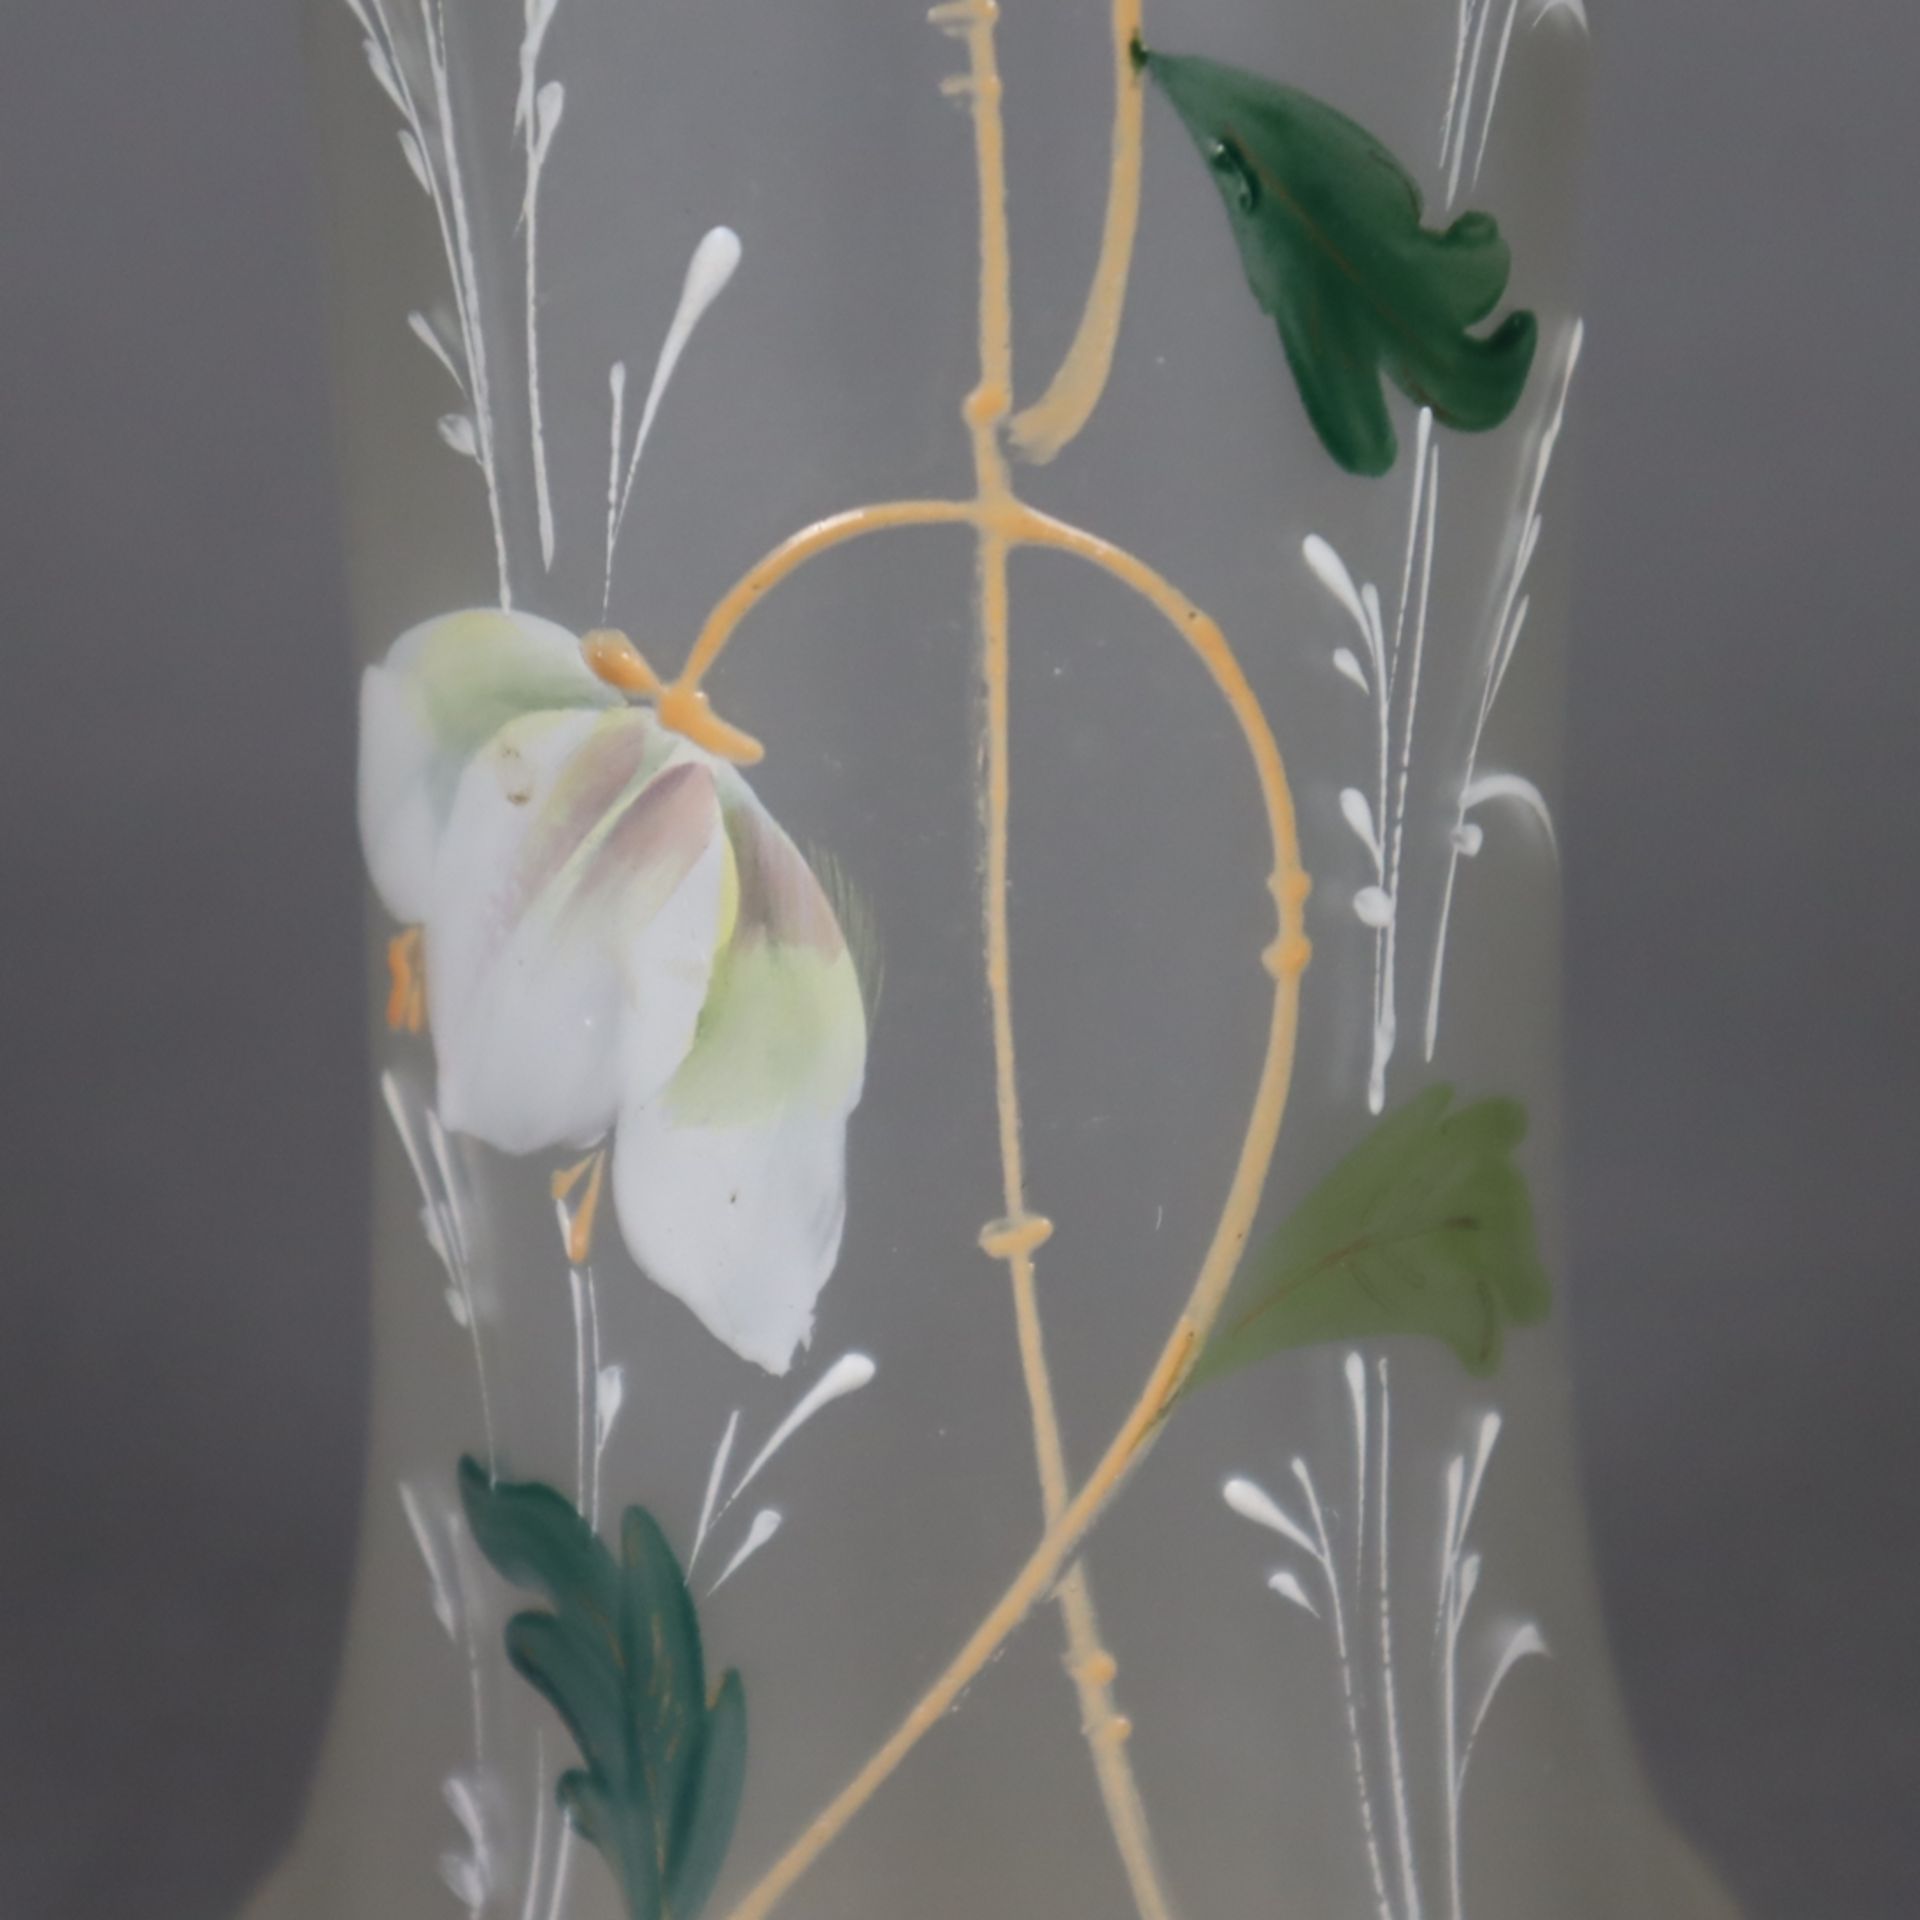 Glasvase - Klarglas, mattiert, Schauseite mit polychromem Blumendekor, Keulenfo - Image 4 of 7